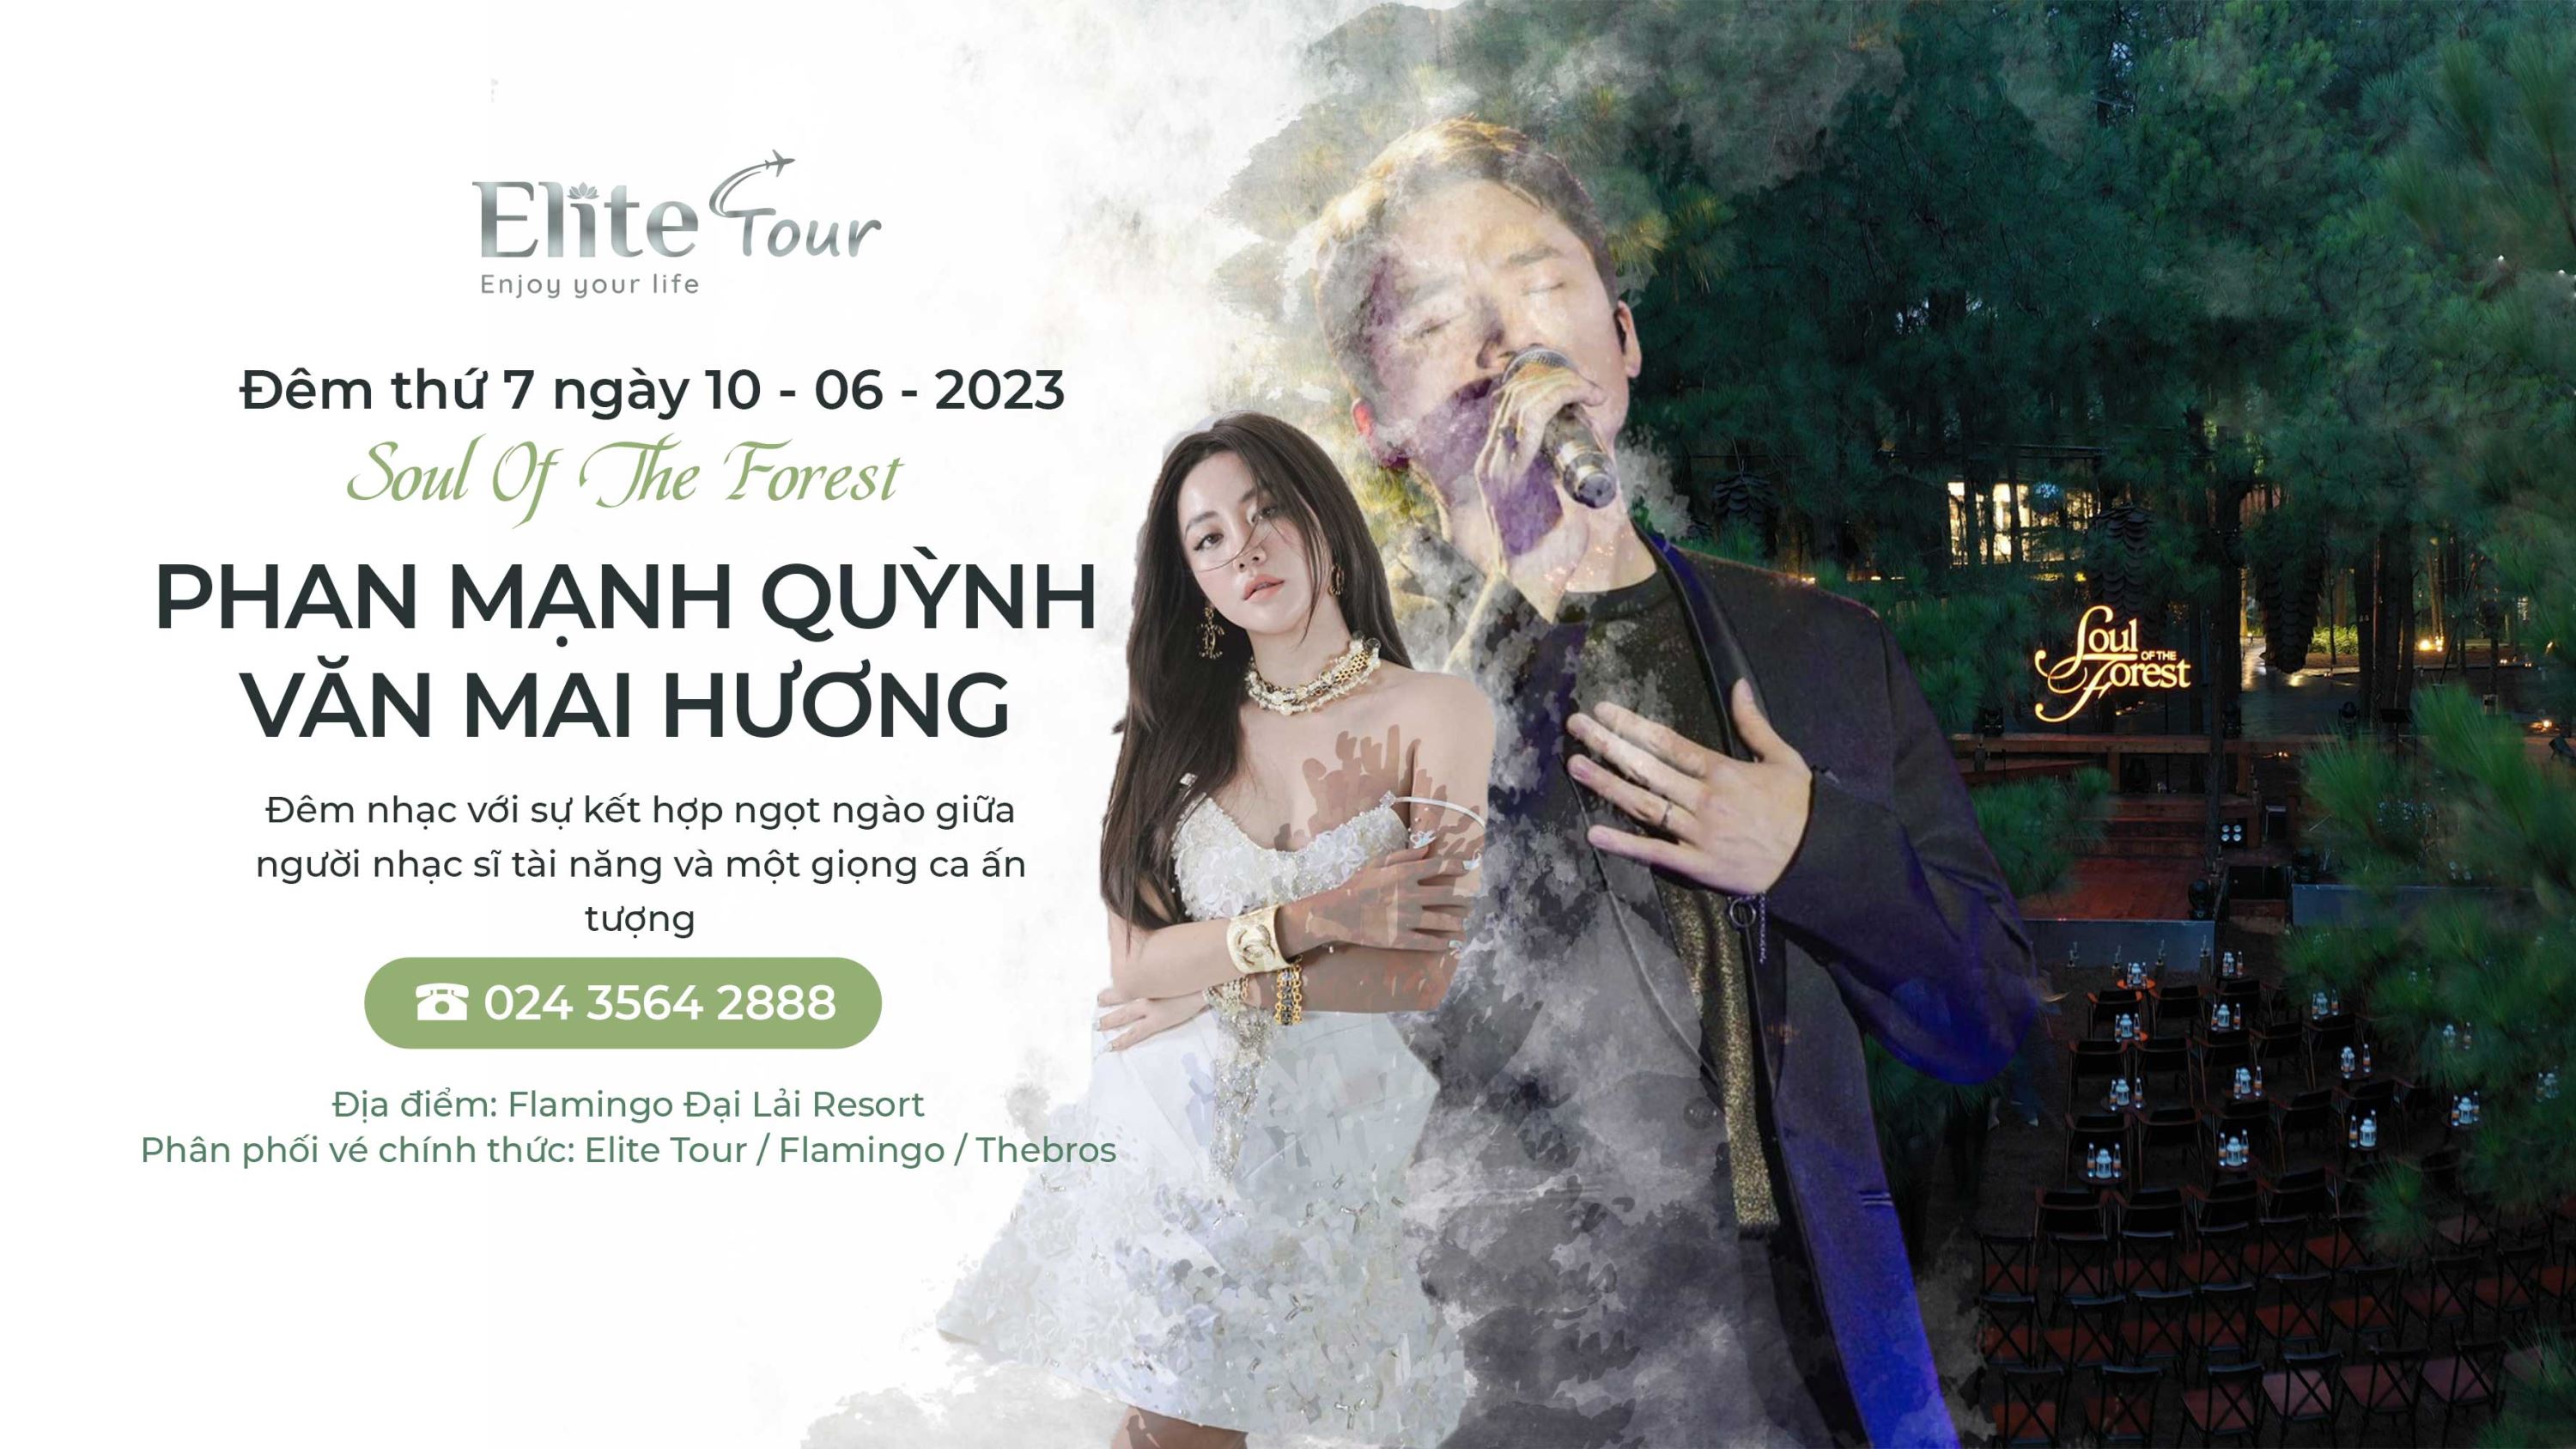 Đêm nhạc Phan Mạnh Quỳnh Văn Mai Hương Soul of the forest